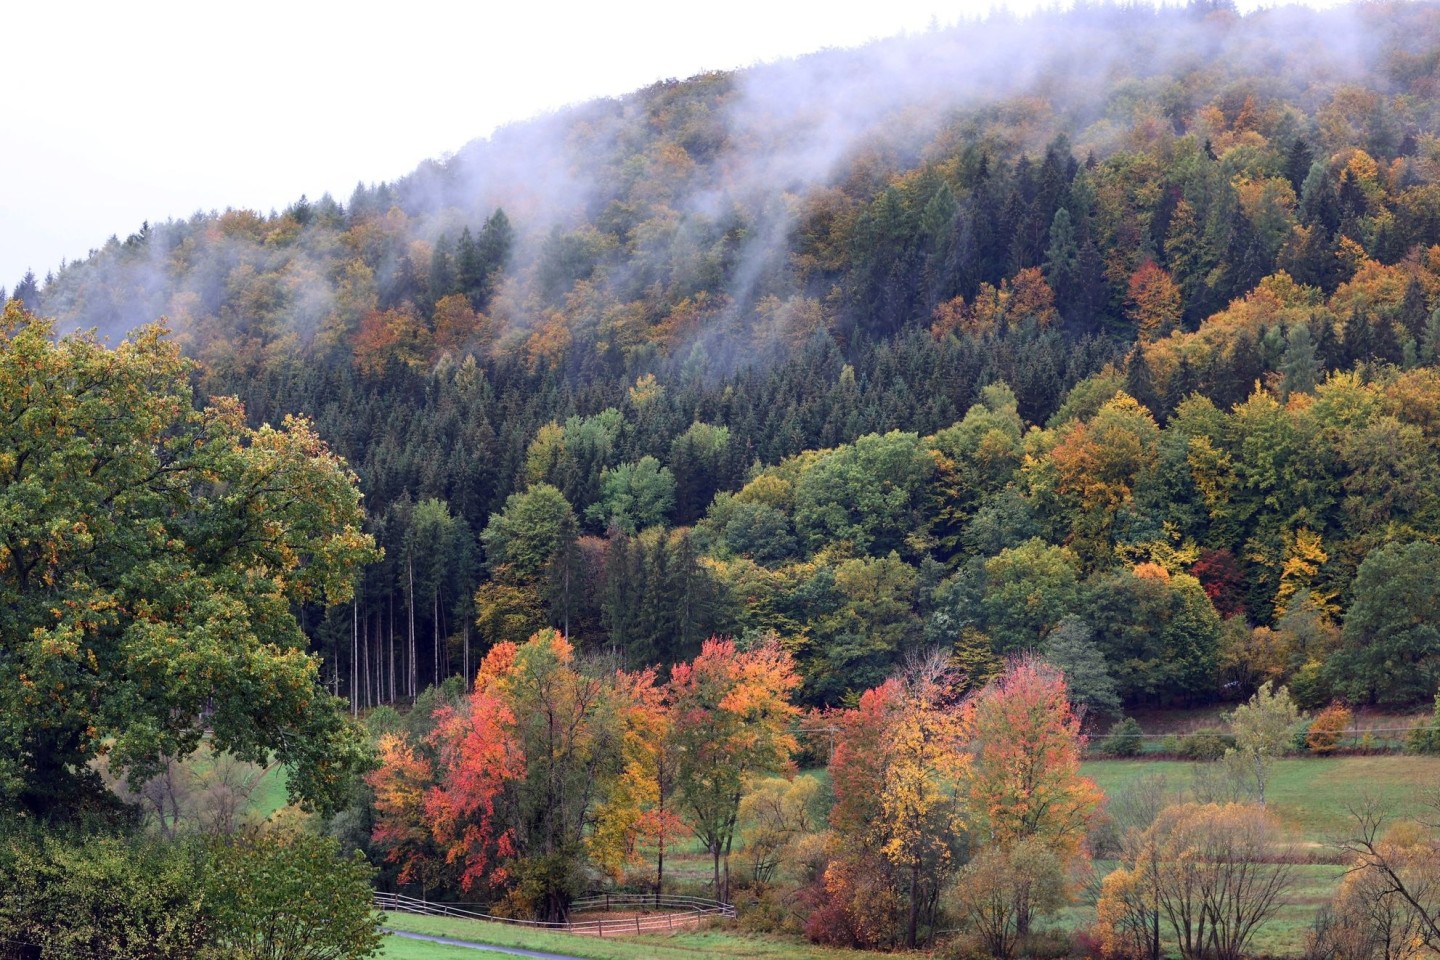 Nebel hängt über den herbstlich verfärbten Bäumen des Ruppertshüttener Forstes.